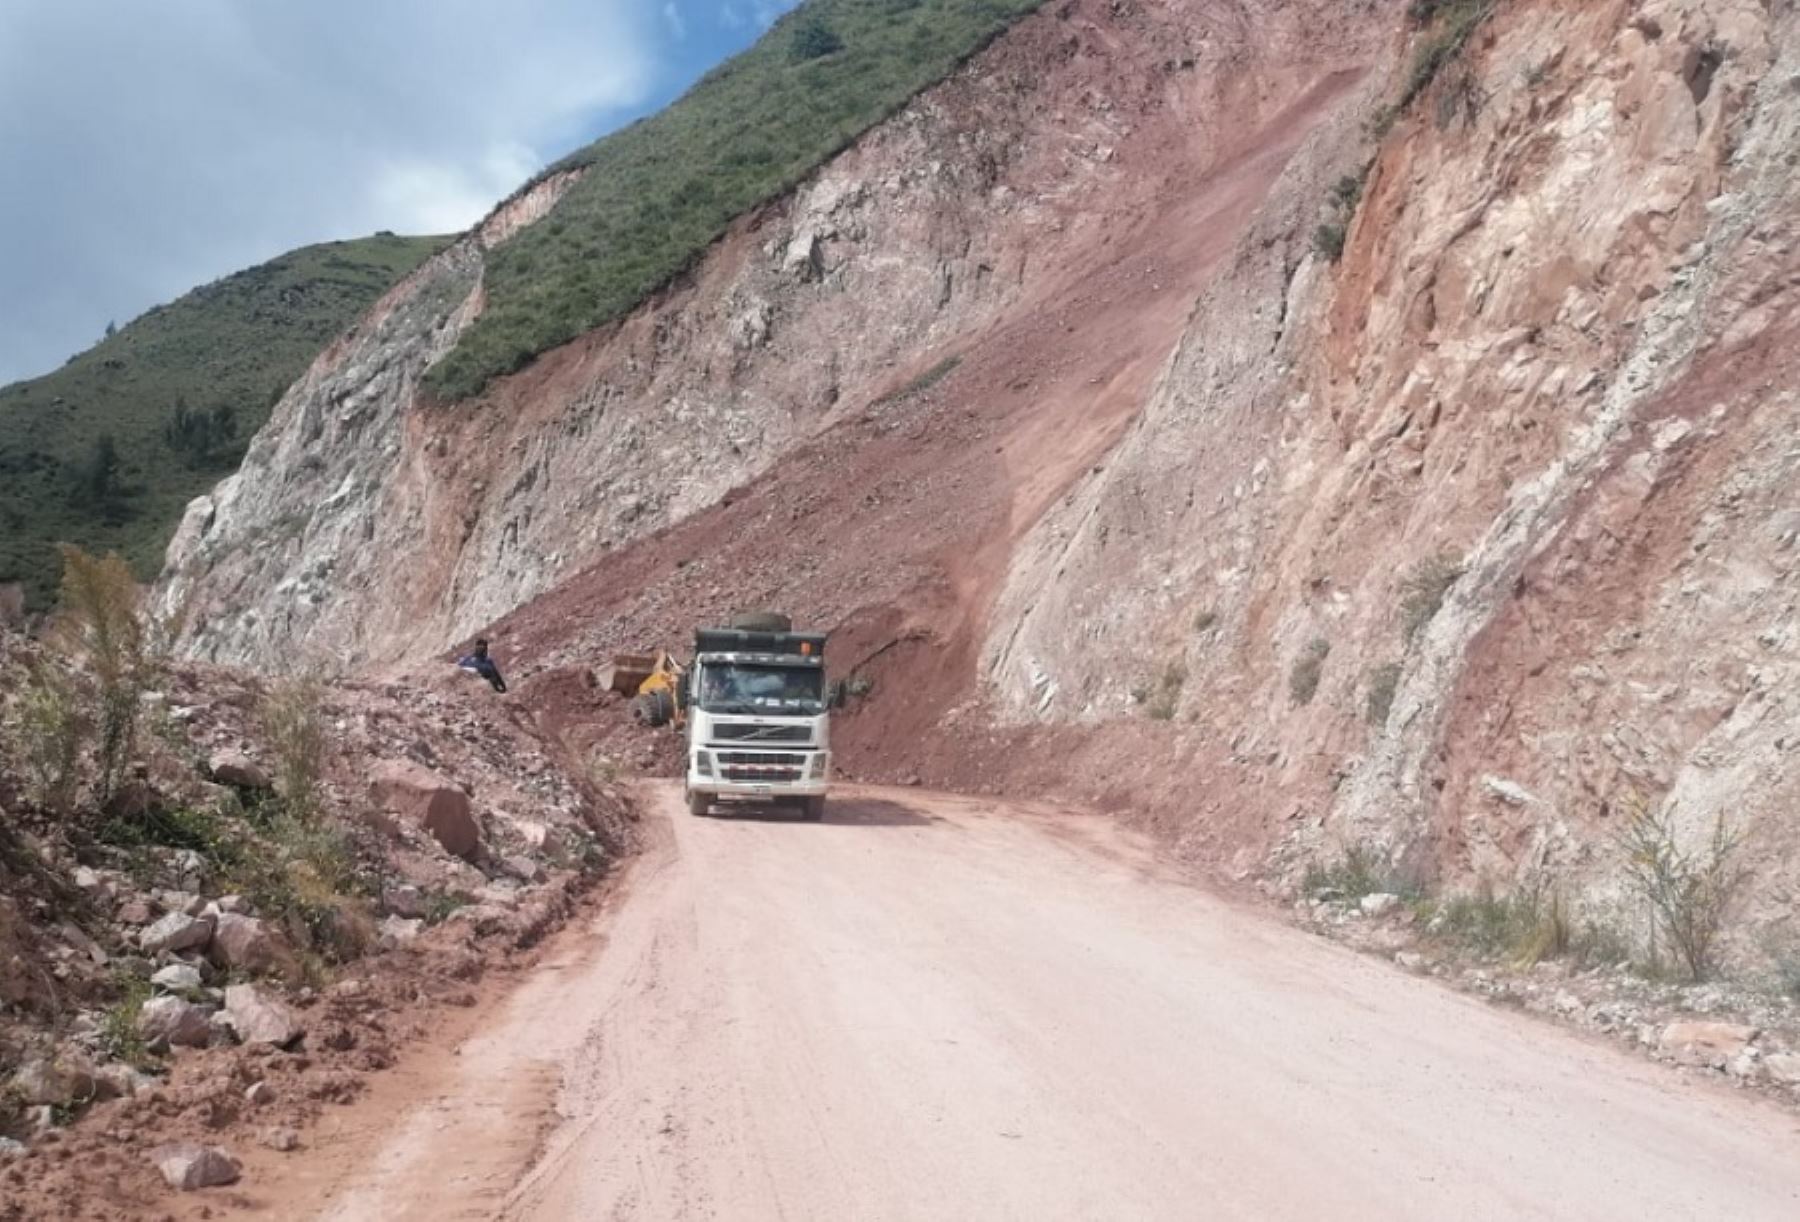 La vía Cusco-Paucartambo, en los kilómetros 9, 10 y 11 del tramo Huambutio-Huancarani, se halla bloqueada por un deslizamiento de tierra y rocas a causa de las intensas lluvias en esta región, confirmó la Oficina de Gestión de Riesgos de Cusco.